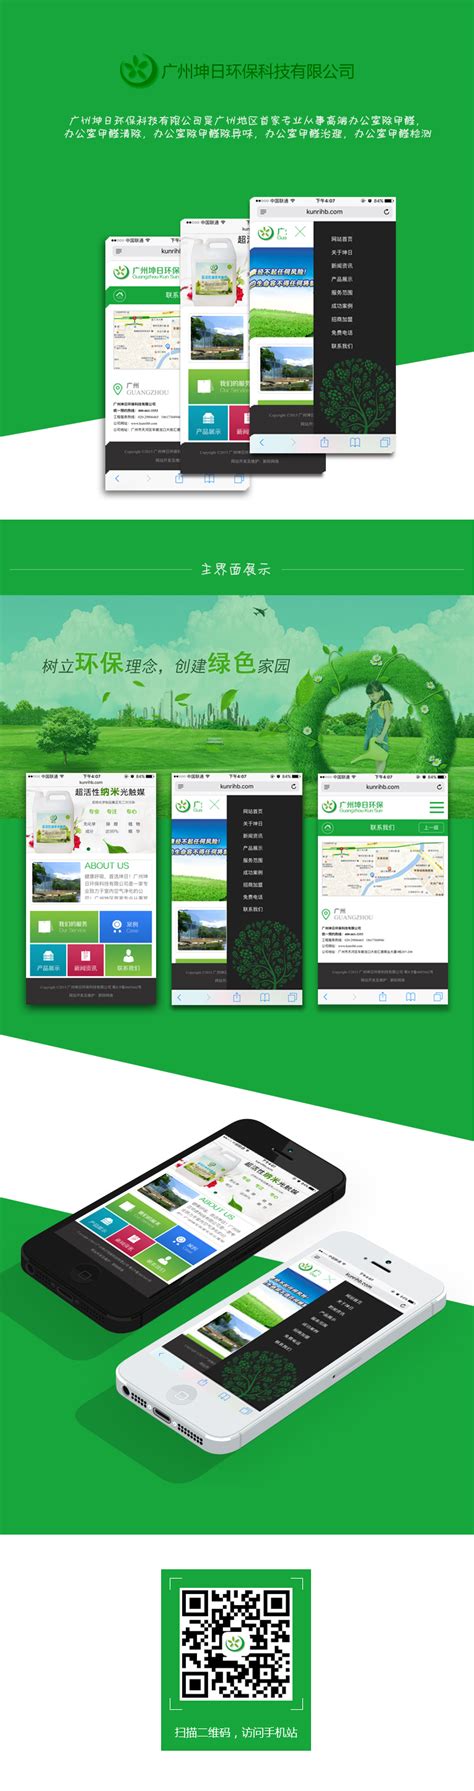 广州坤日环保科技有限公司网站改版